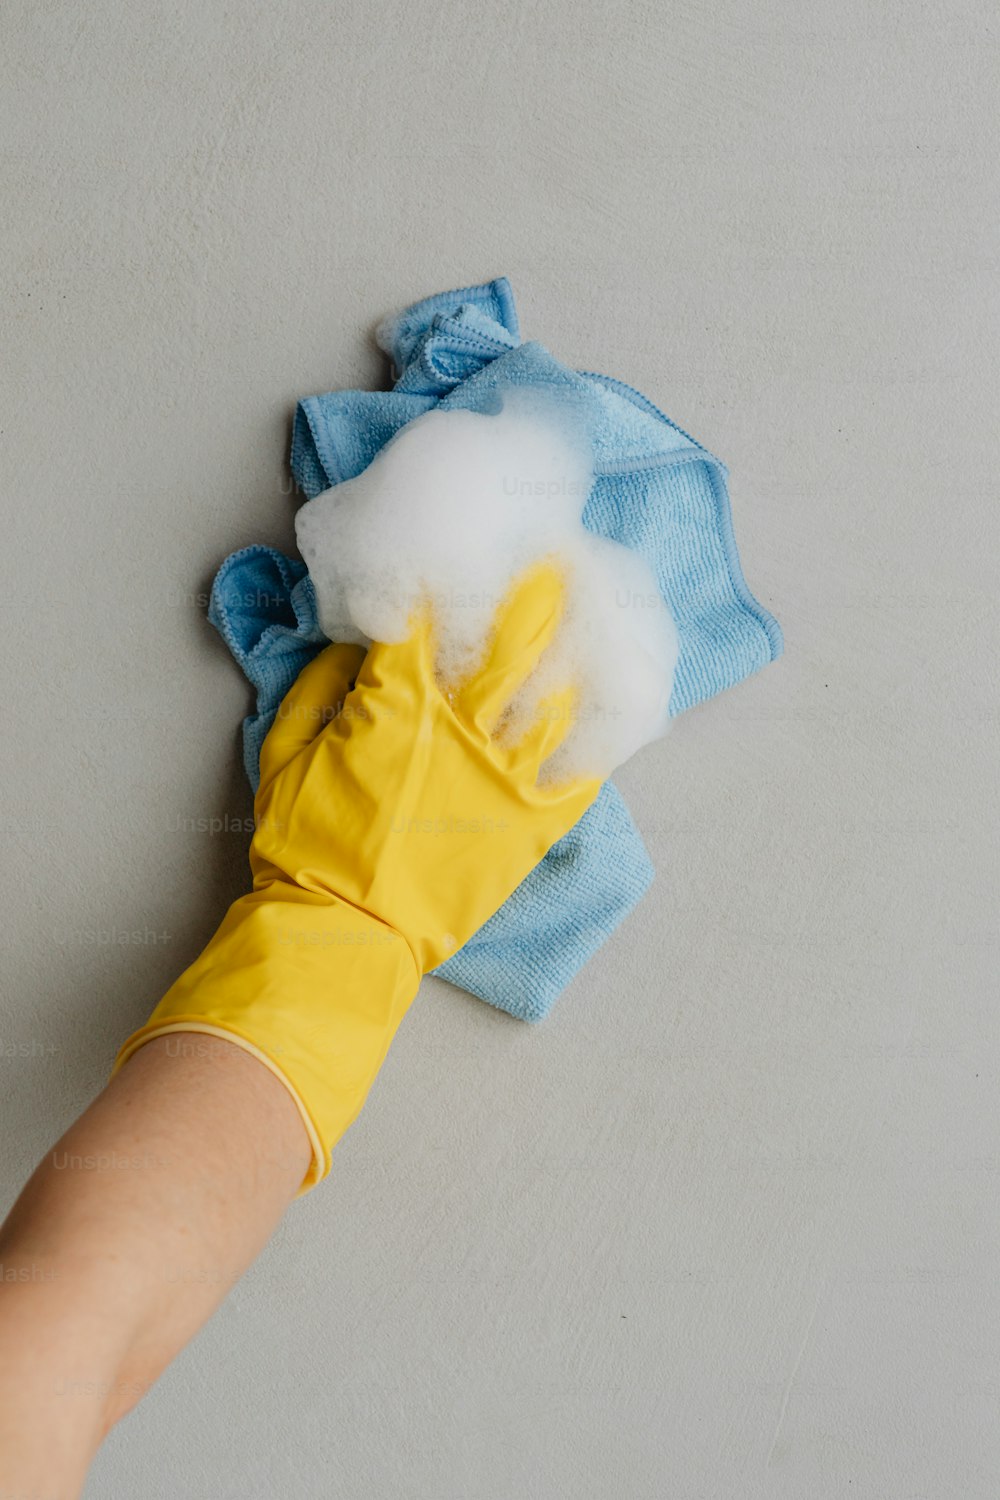 la mano de una persona con guantes de goma amarillos y un paño de limpieza